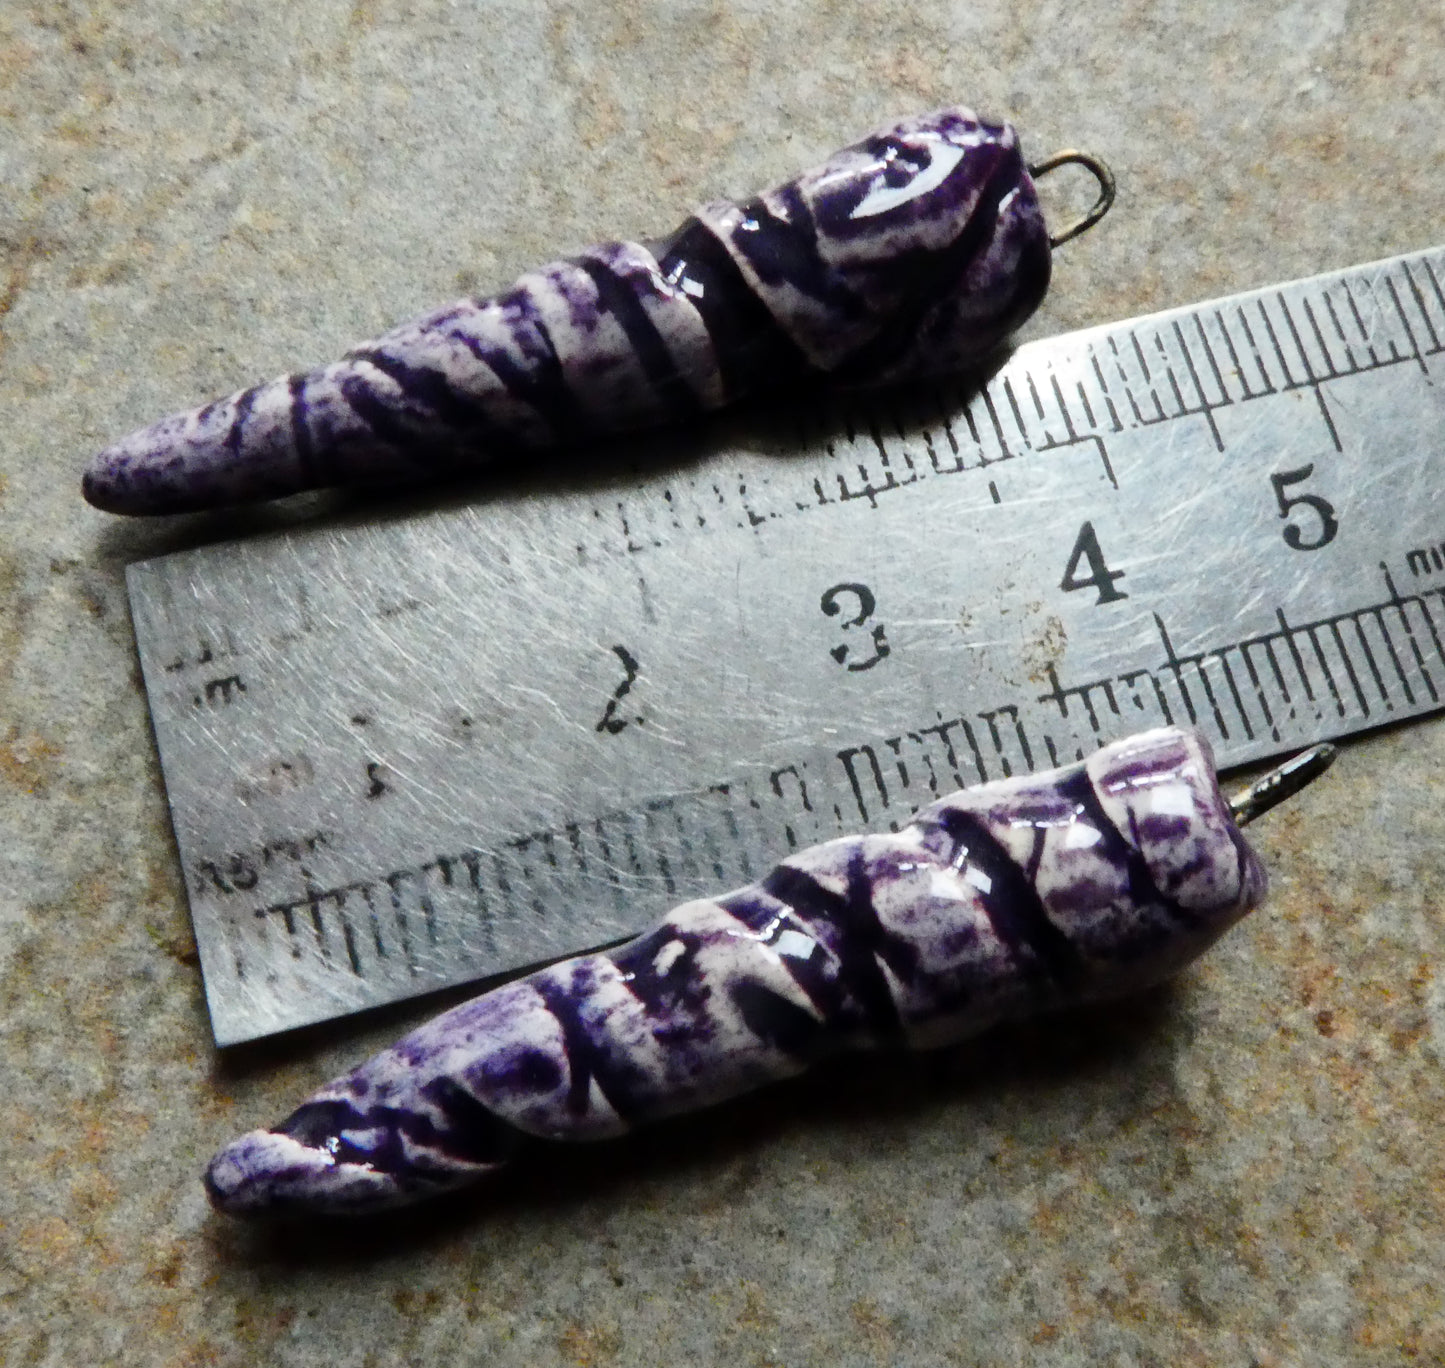 Ceramic Incised Long Spike Earring Charms - Pueblo Purple